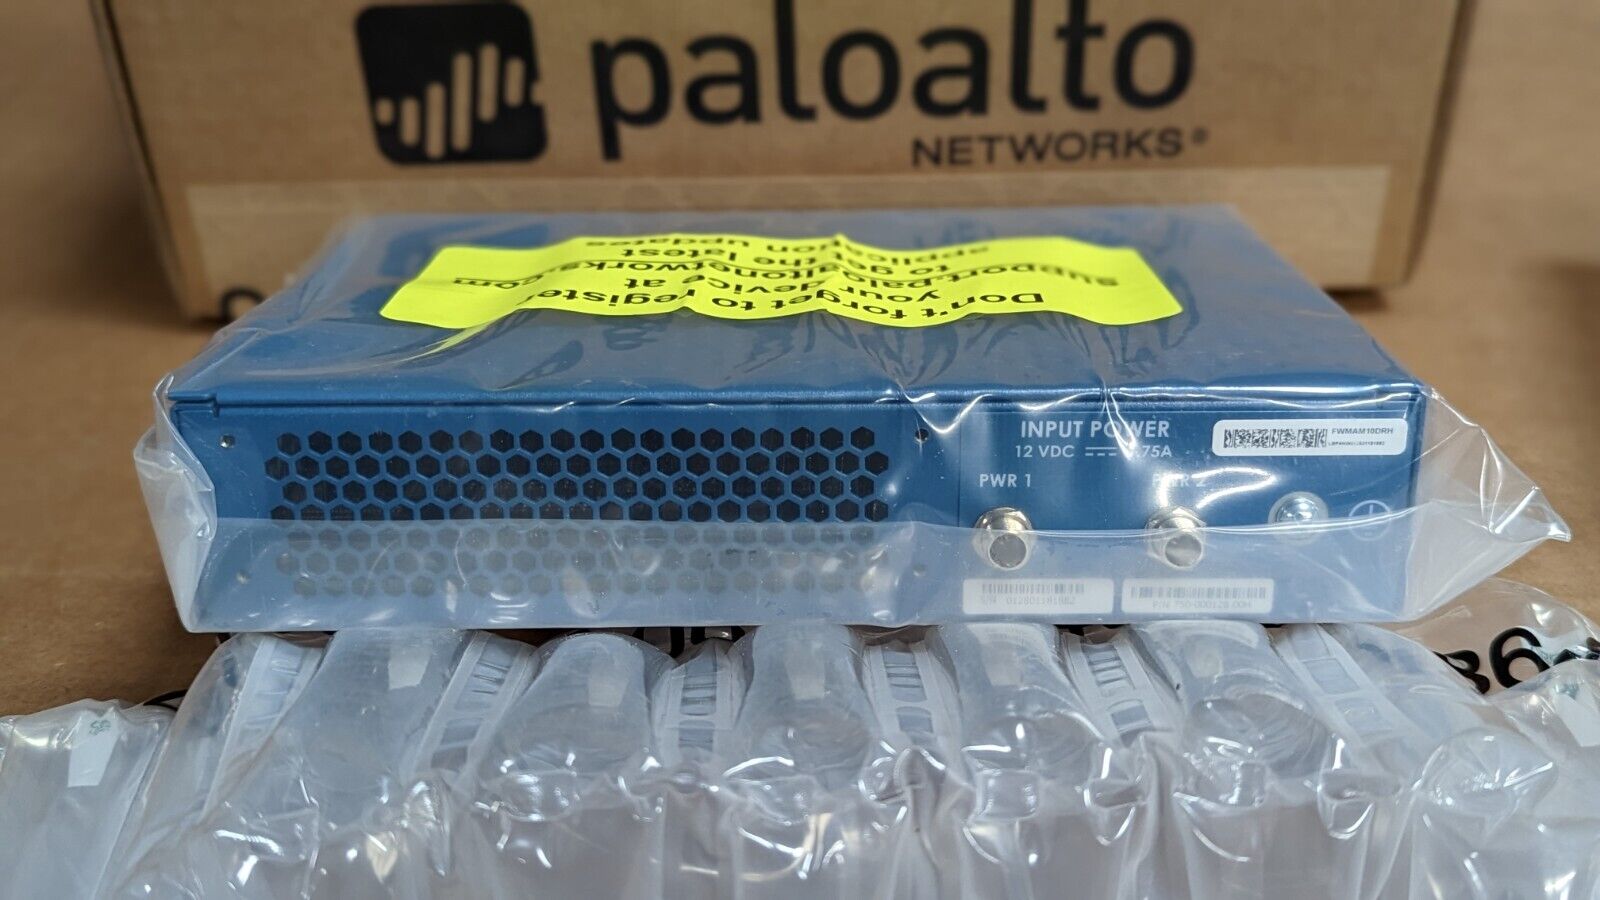 Palo Alto PAN-PA-220 Next Gen Firewall Brand New Sealed in Original Box